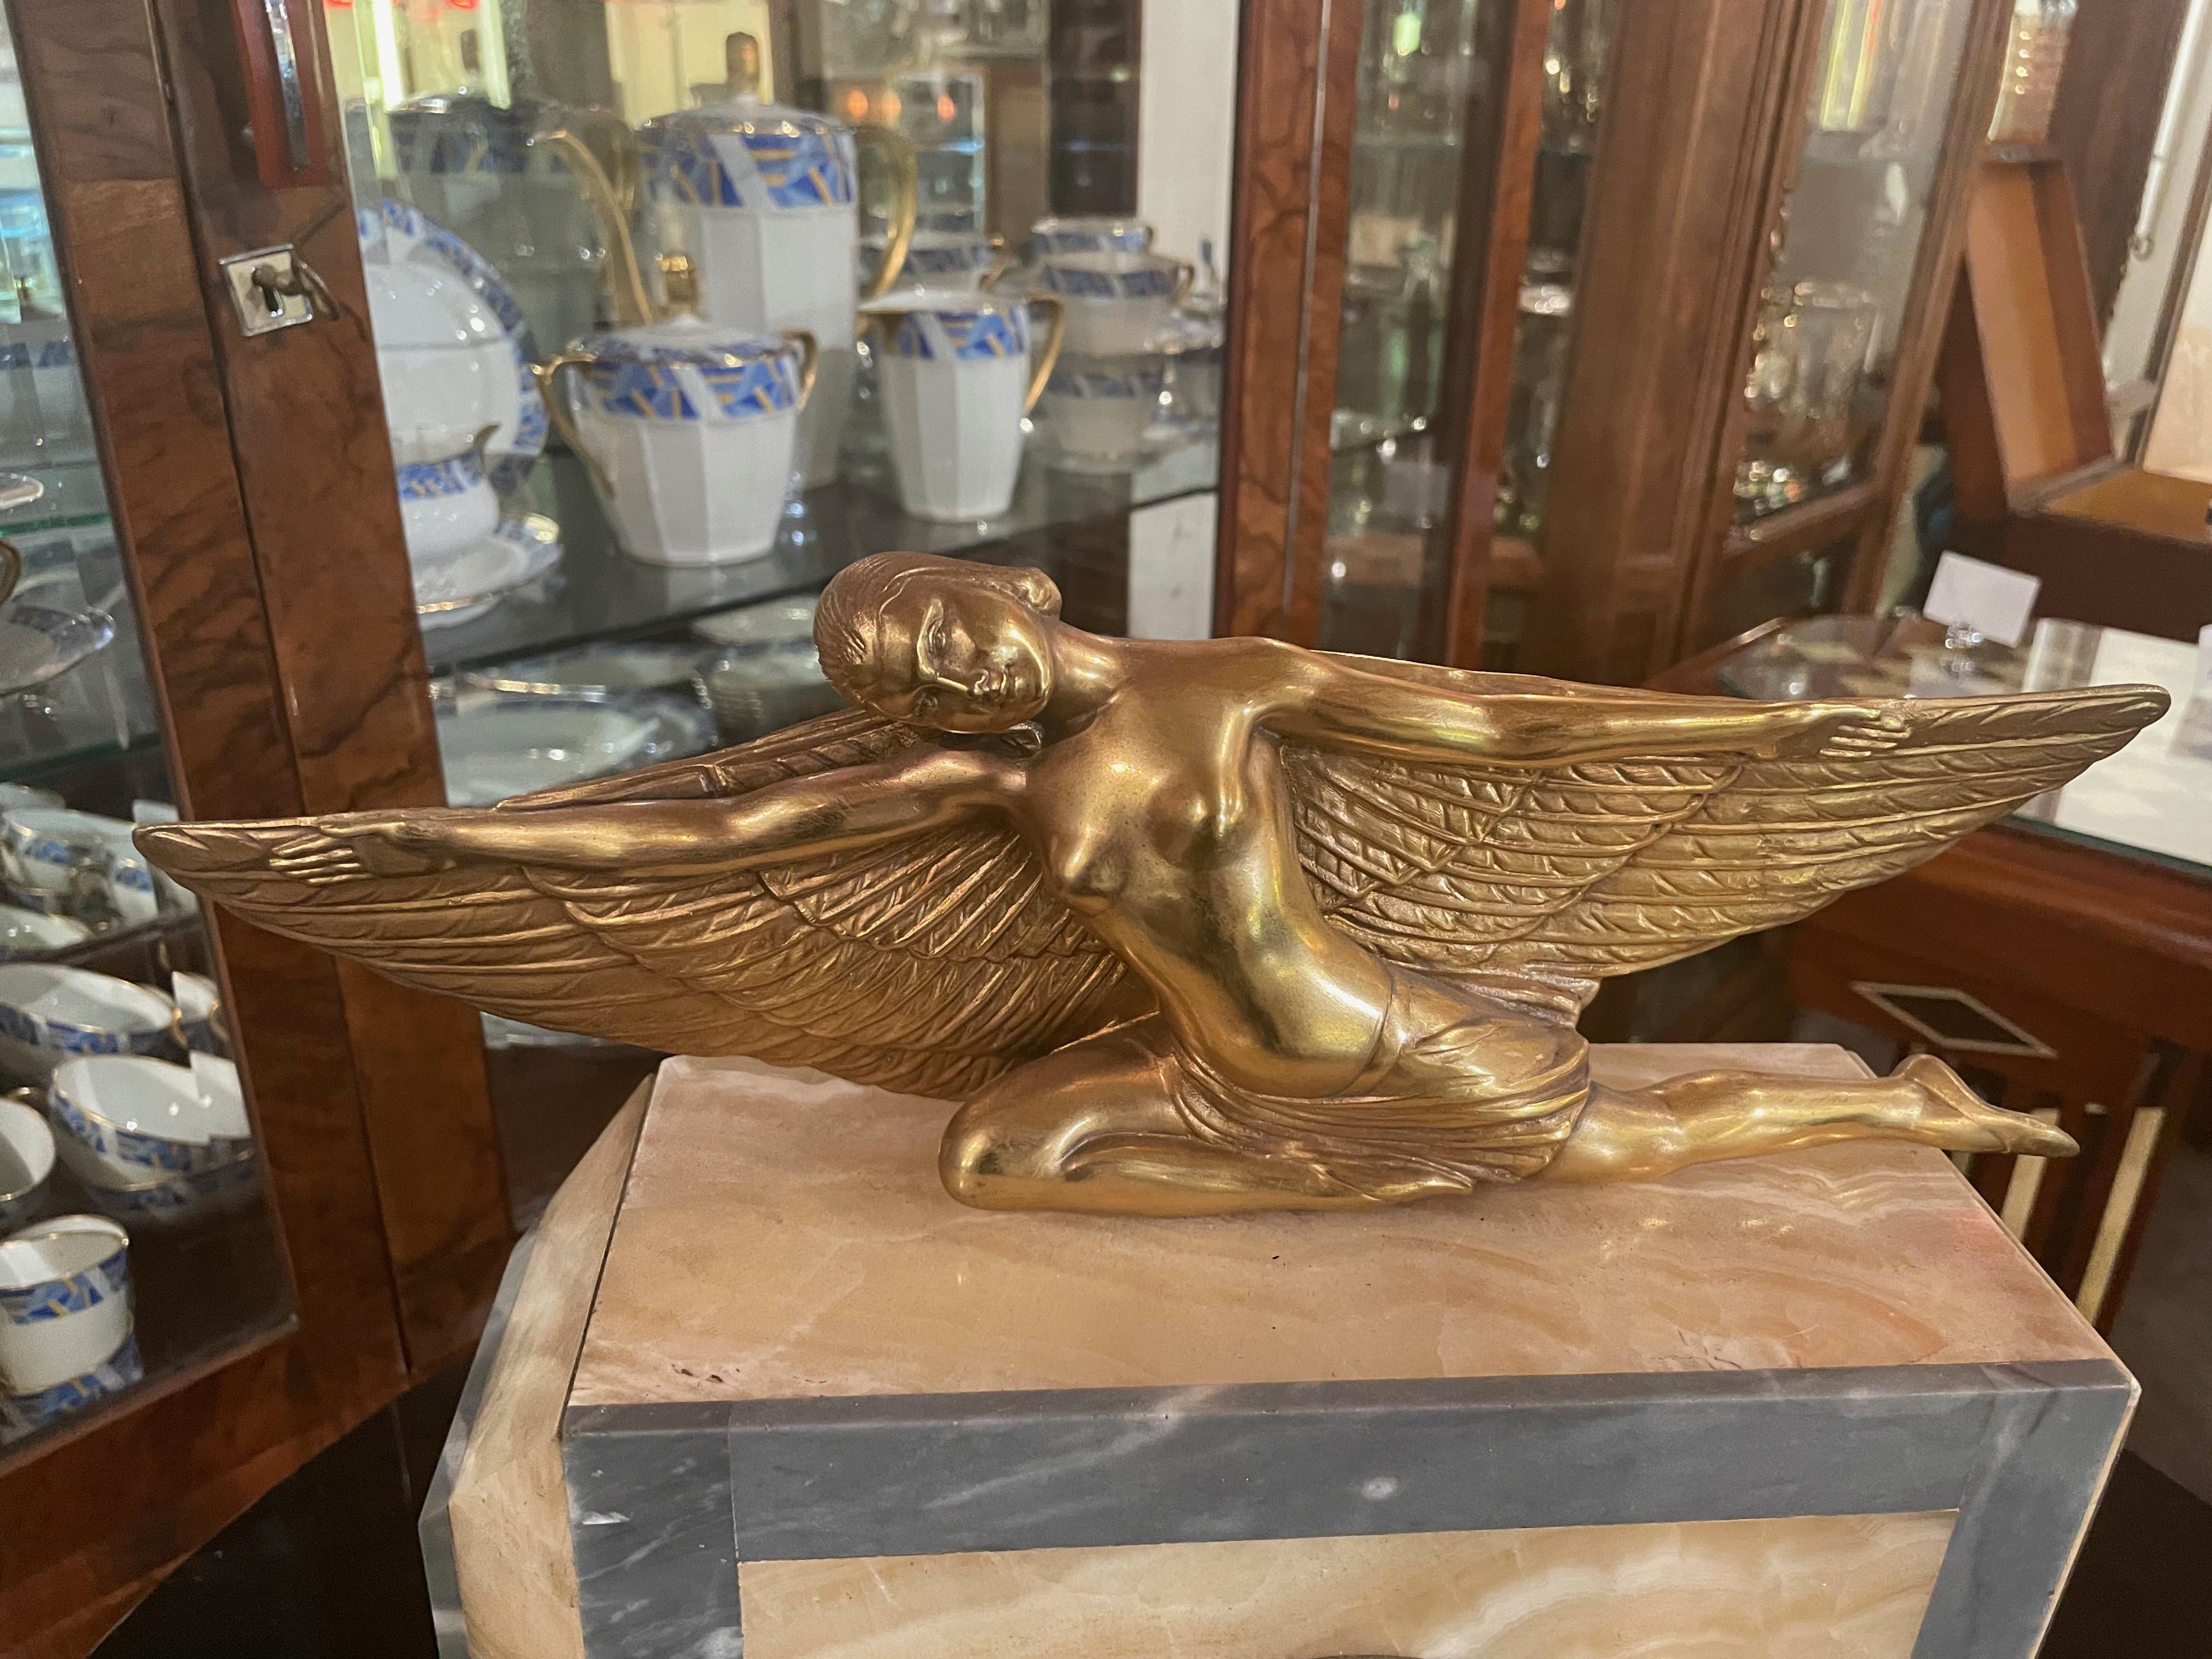 Die vergoldete Art-déco-Statue von Lady Icarus schmückt eine französische Marmoruhr. Eine schöne Wiedergabe der weiblichen Form des Ikarus mit Flügeln im Art-Déco-Stil, die über die Spitze dieser schönen, ruhigen weiblichen Form ausgebreitet sind.